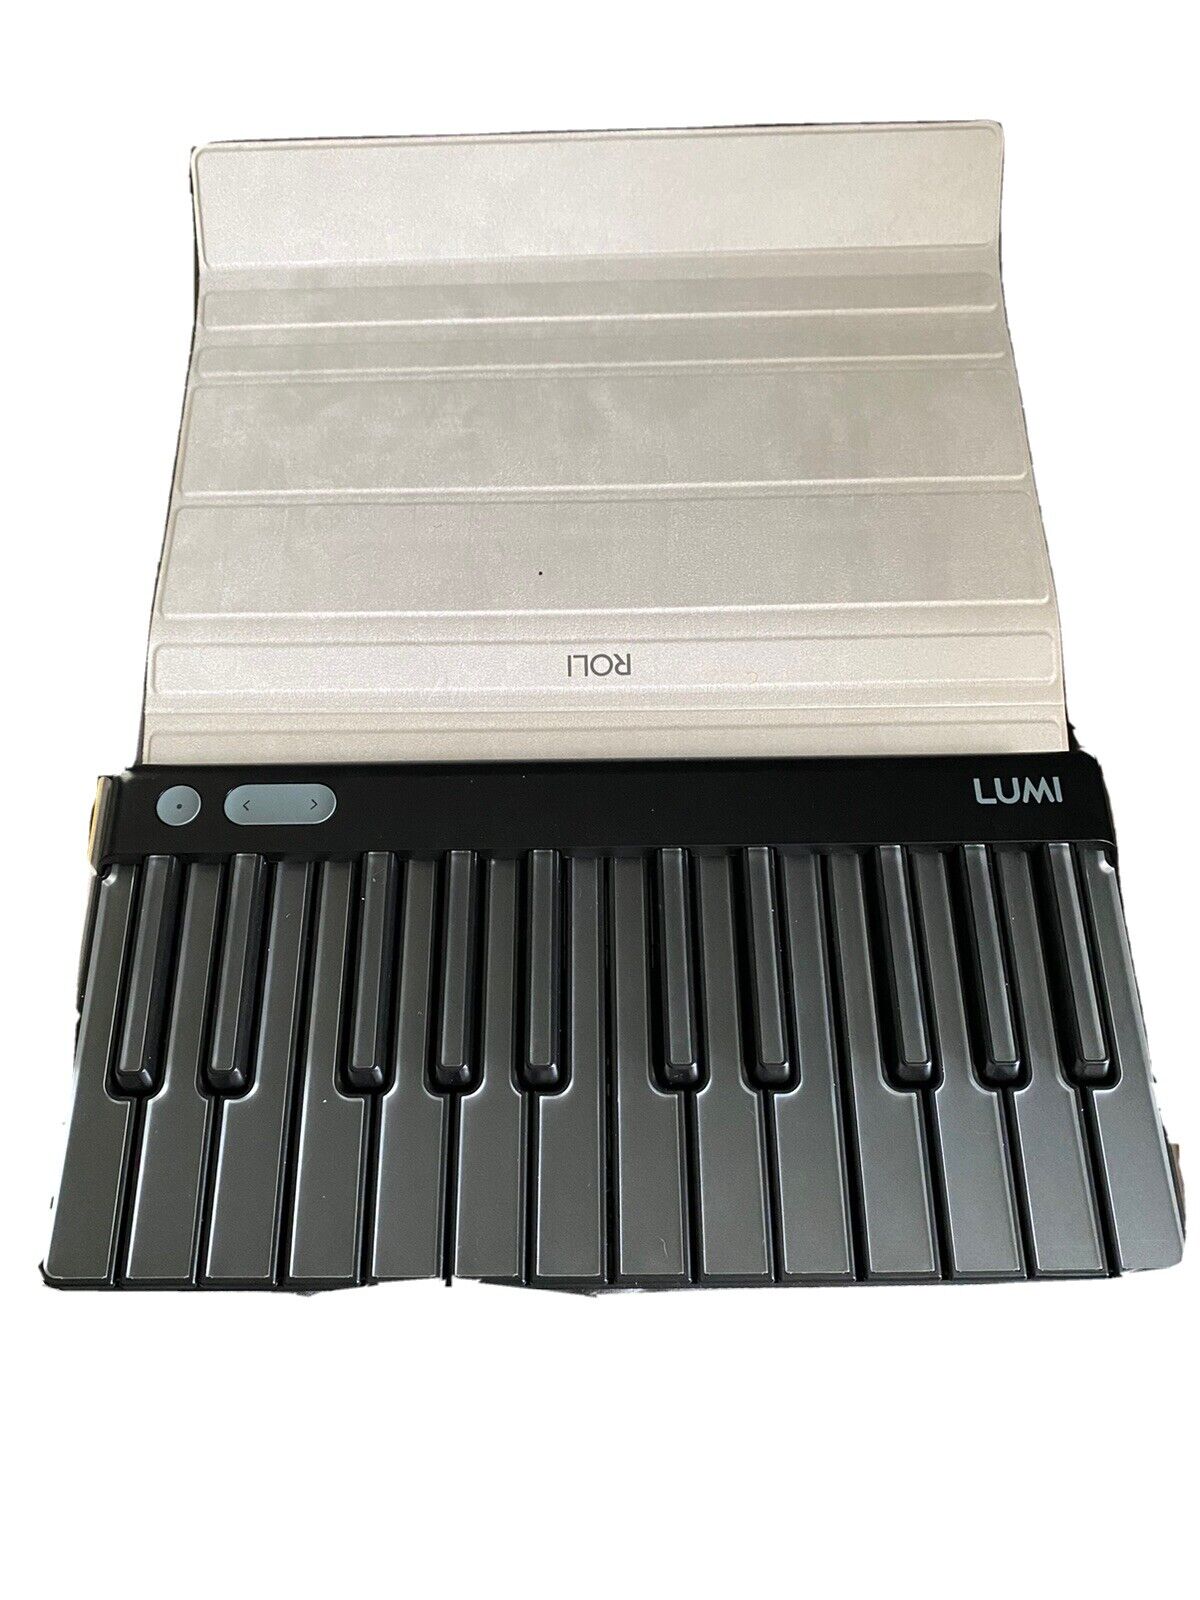 Roli Lumi Keys Lighted Keyboard Model Lkb01